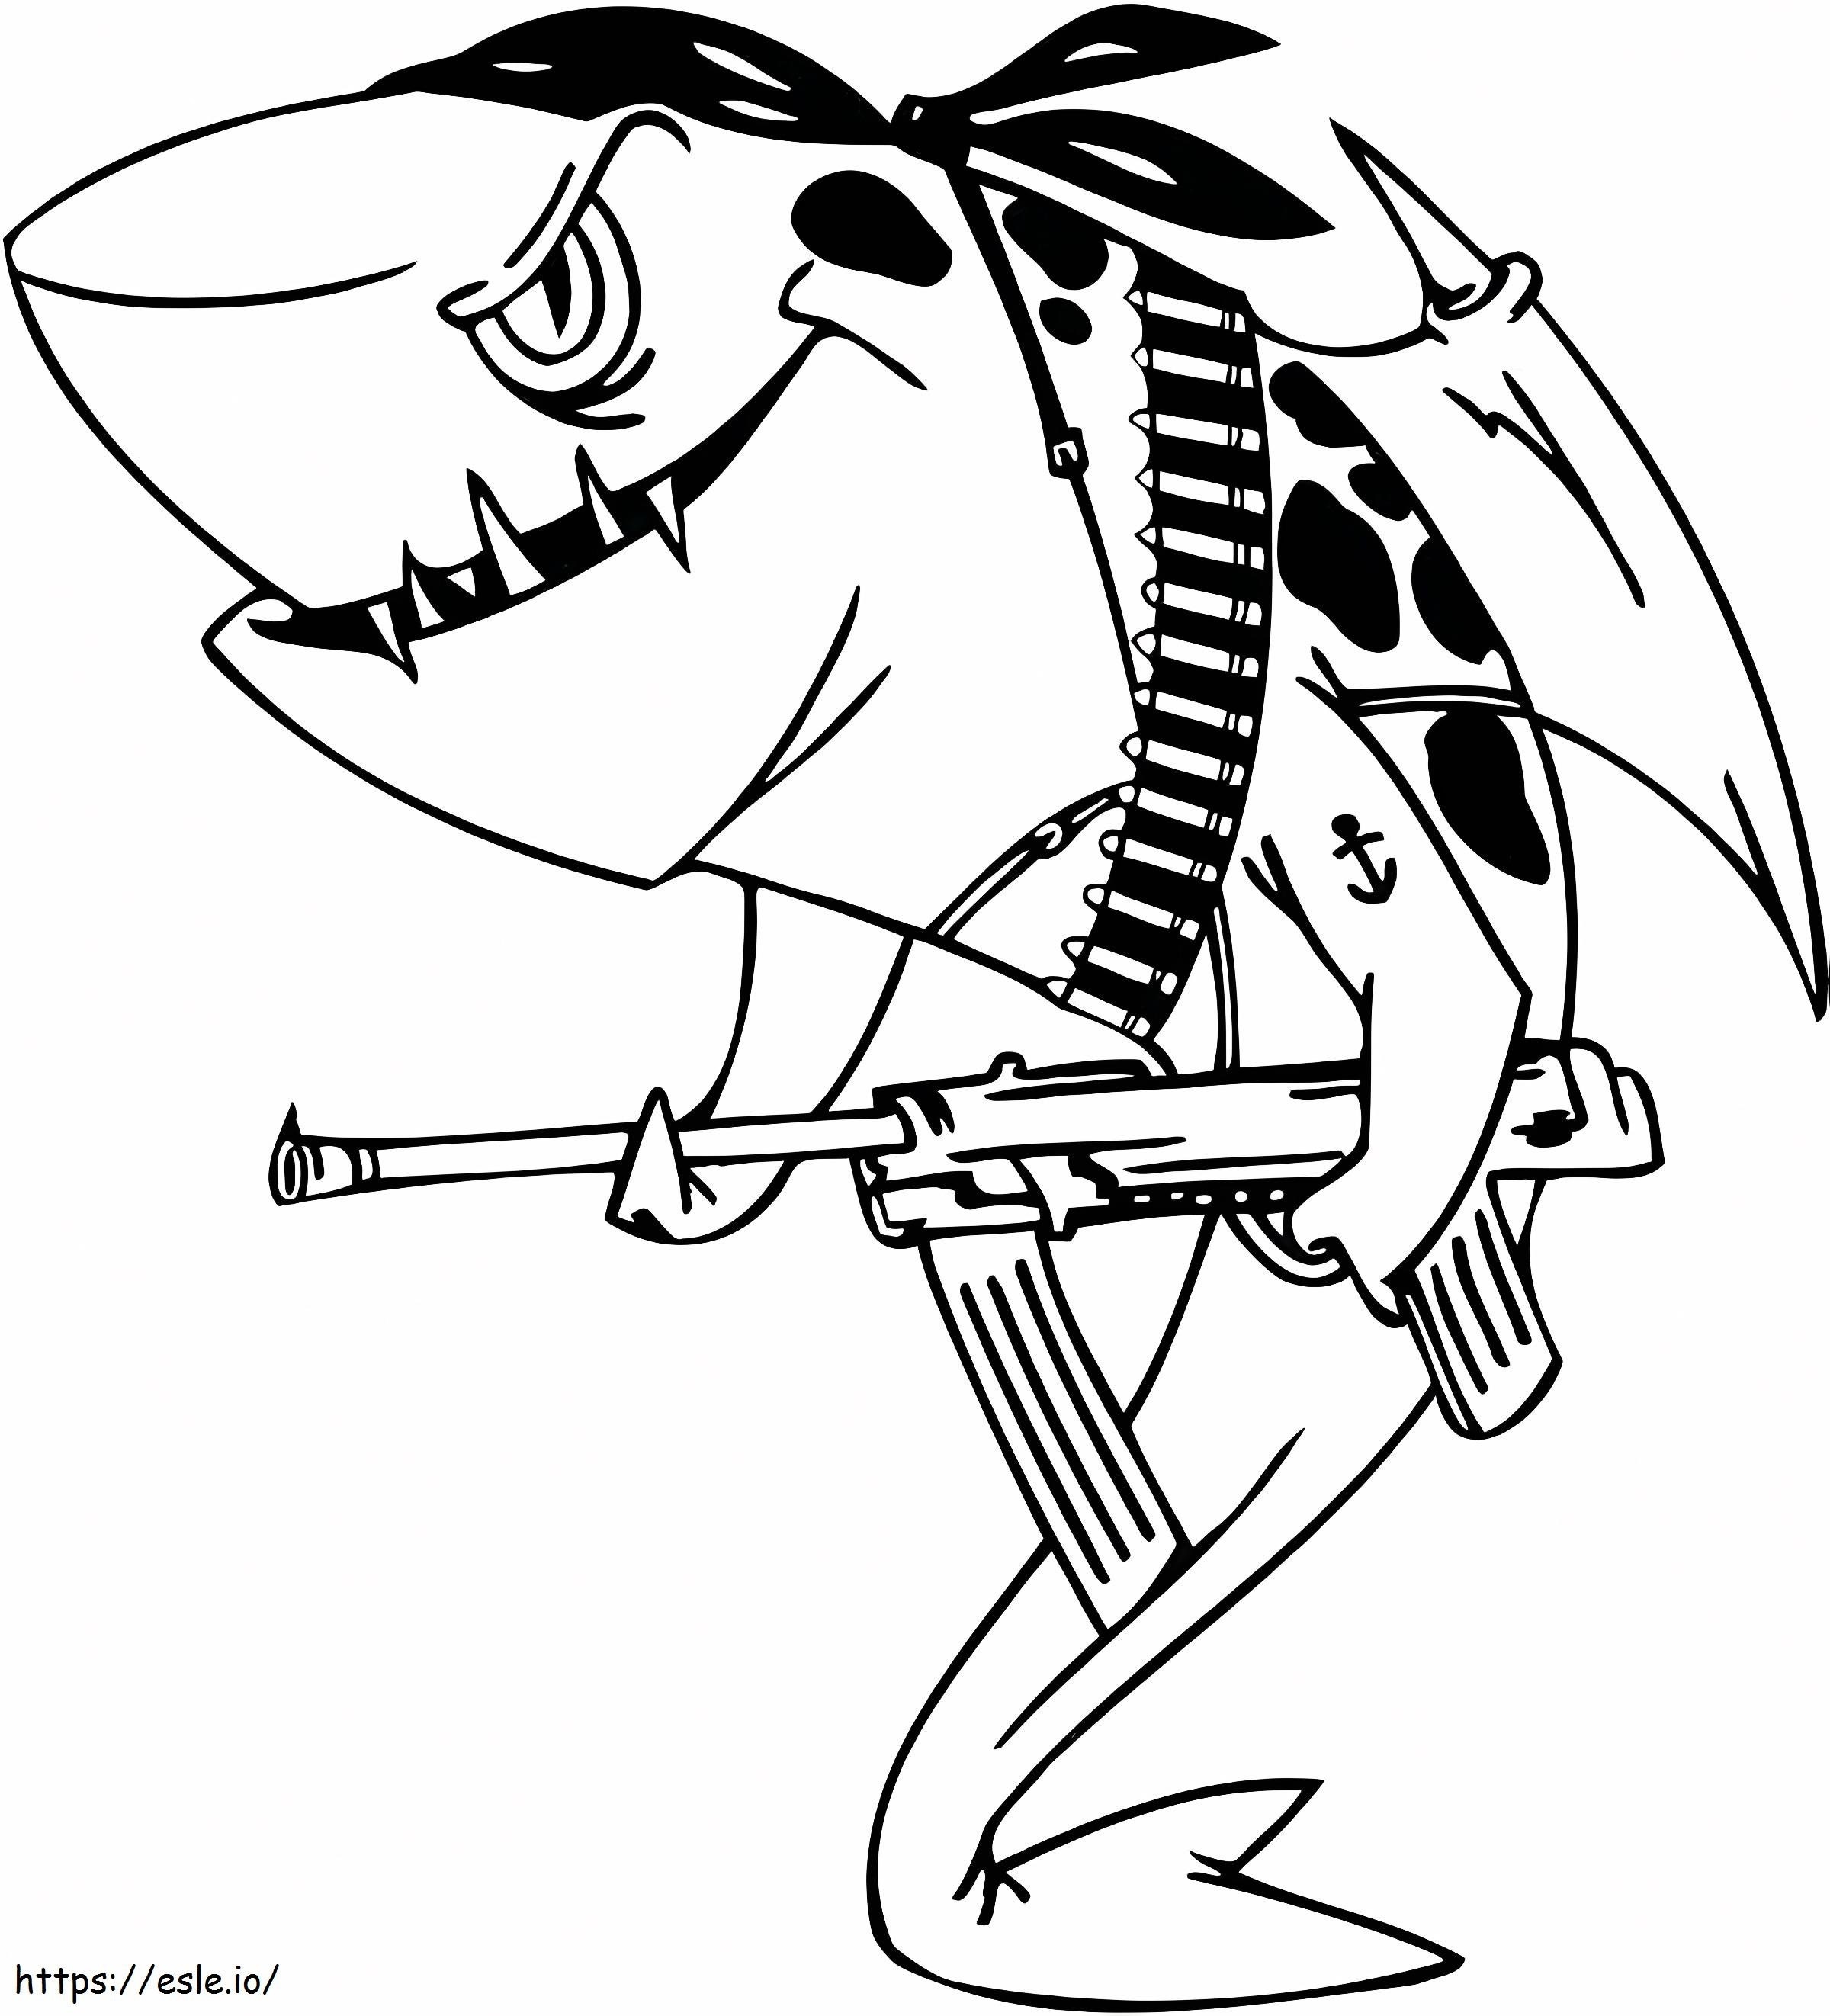 _Boyama Sayfaları Köpekbalıkları Büyük Beyaz Köpek Balığı Köpek Balığı Köpek Balığı Kaplan Köpek Balığı Korsan Köpek Balığı Örneği boyama